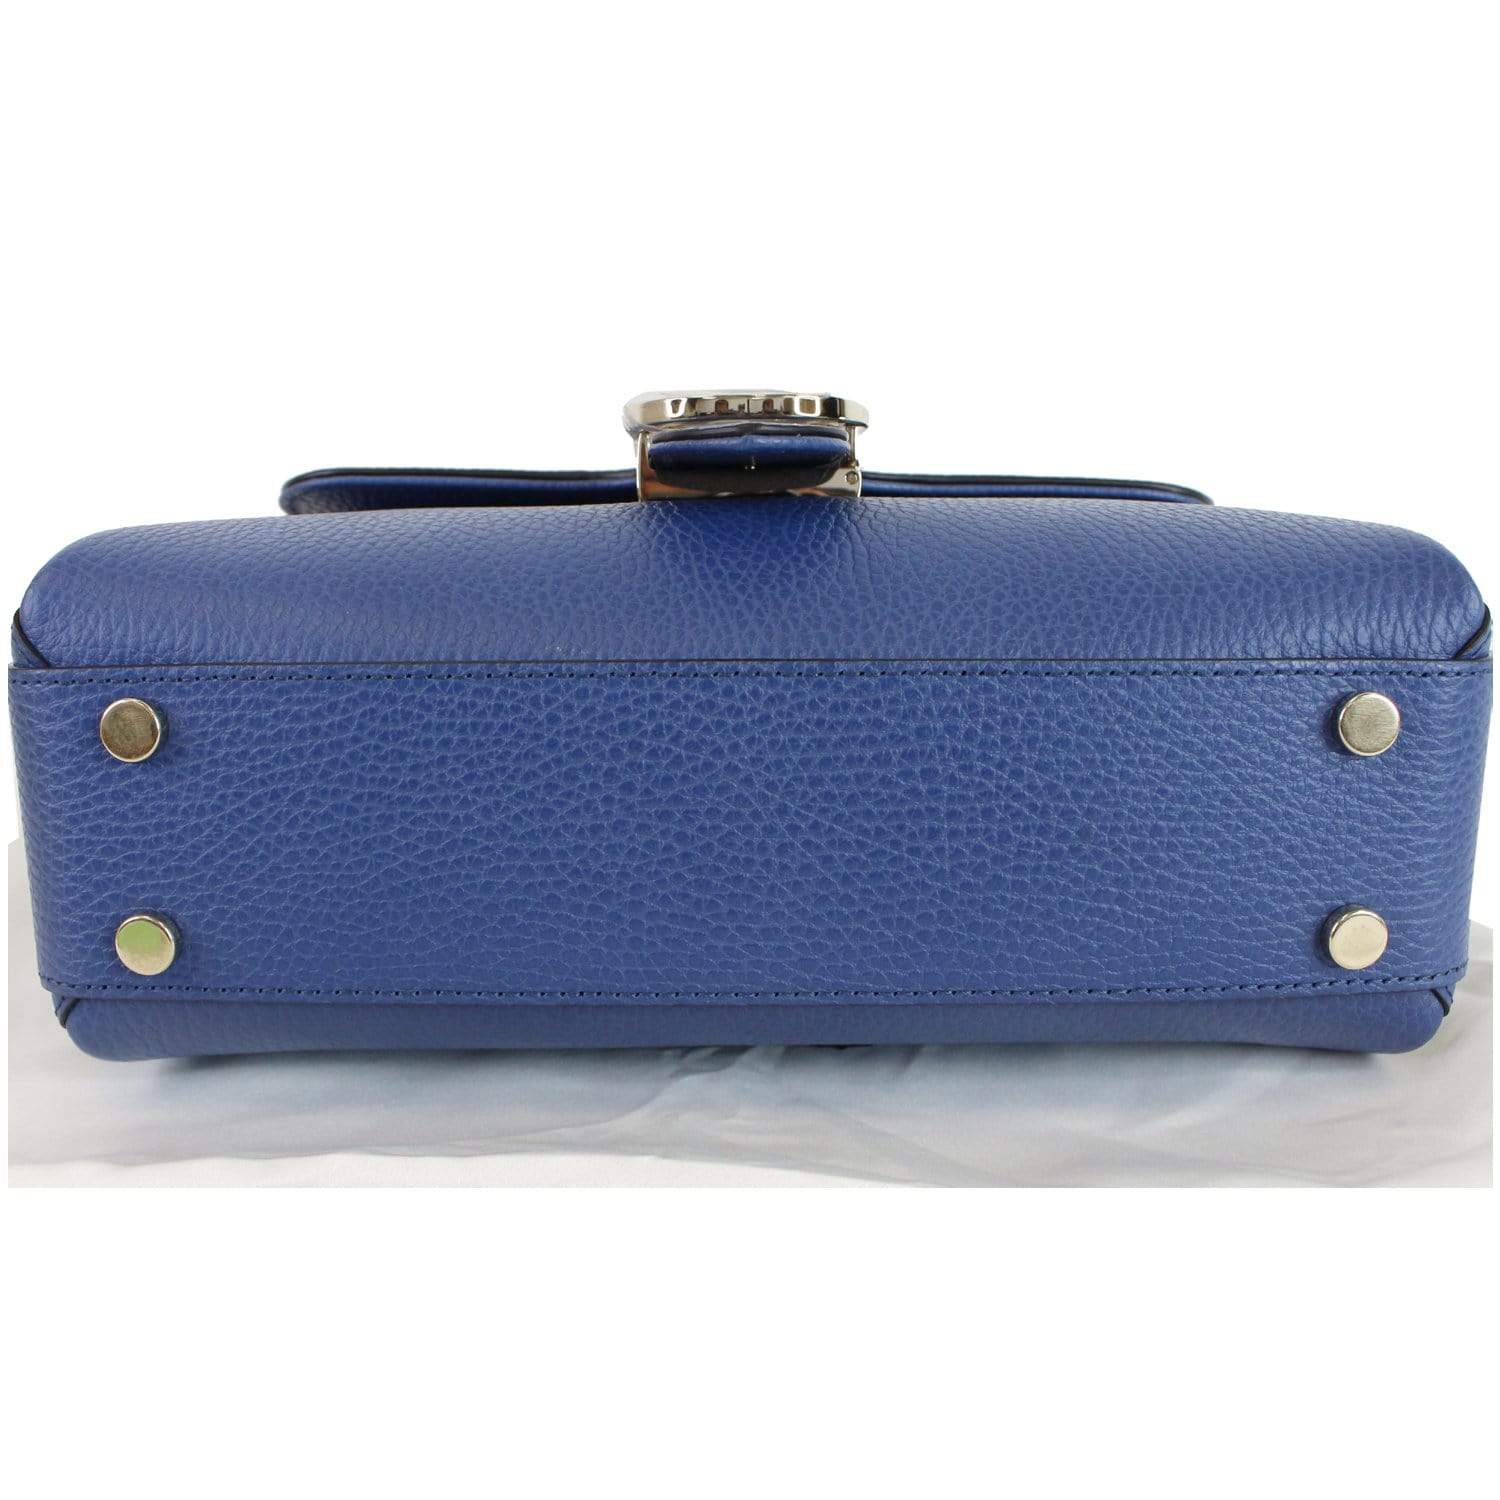 Gucci GG Cigarette Holder - Blue Travel, Accessories - GUC87122